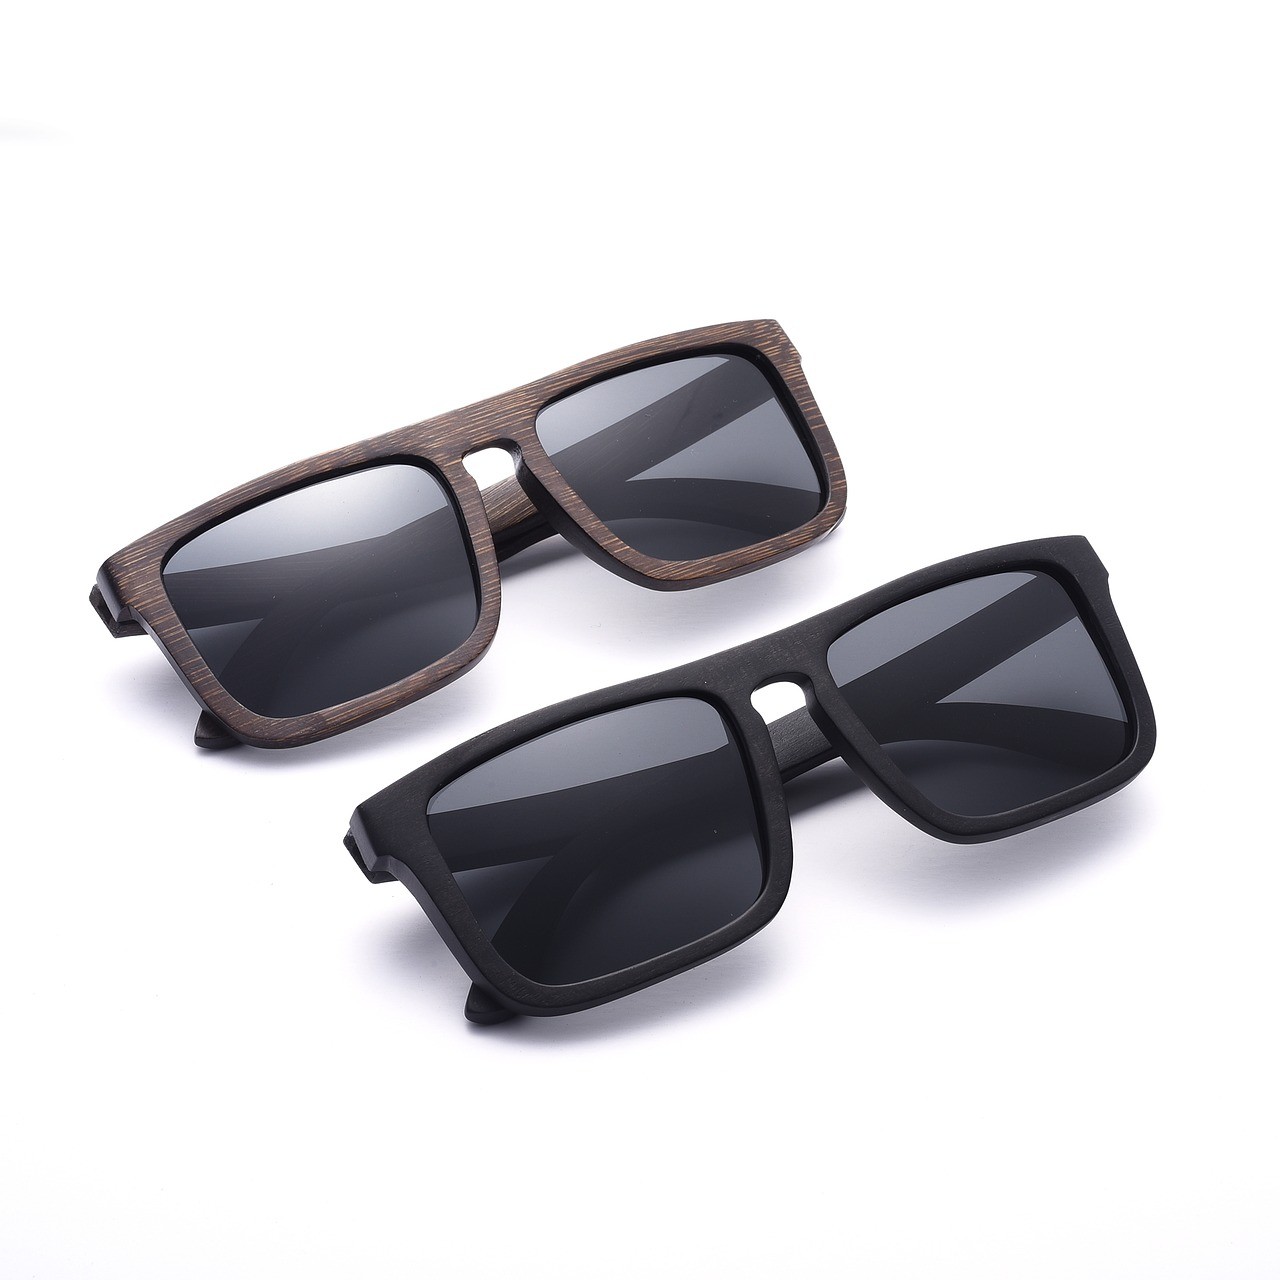 wood-sunglasses-2500243_1280